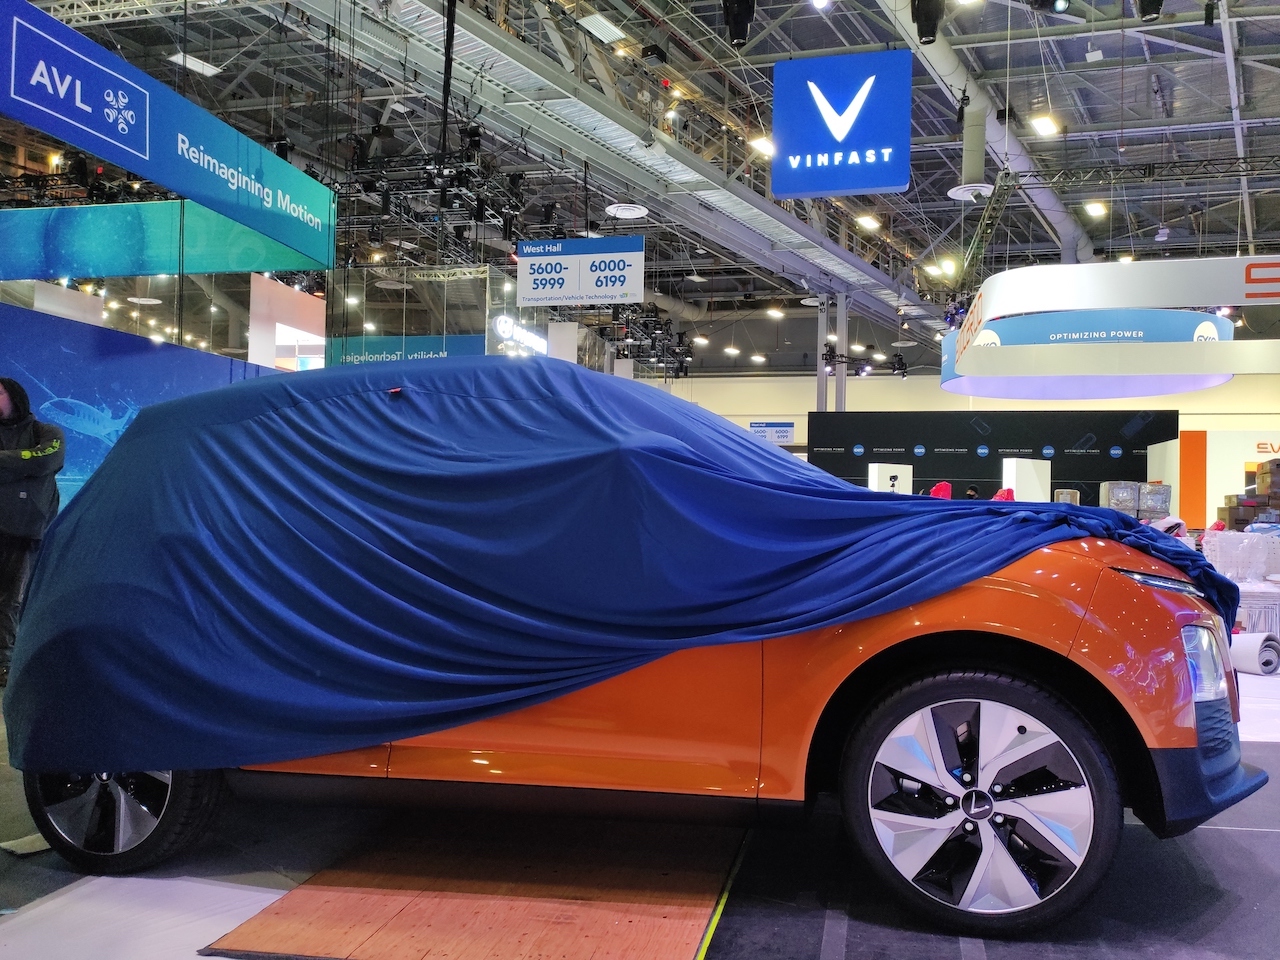 Theo công bố, tất cả các mẫu xe của VinFast tại CES 2022 đều được thiết kế bởi các xưởng thiết kế danh tiếng là Pininfarina và Torino Design, với ngôn ngữ thiết kế hiện đại nhằm tối ưu tính năng khí động học, đề cao sự duy mỹ và cá tính.